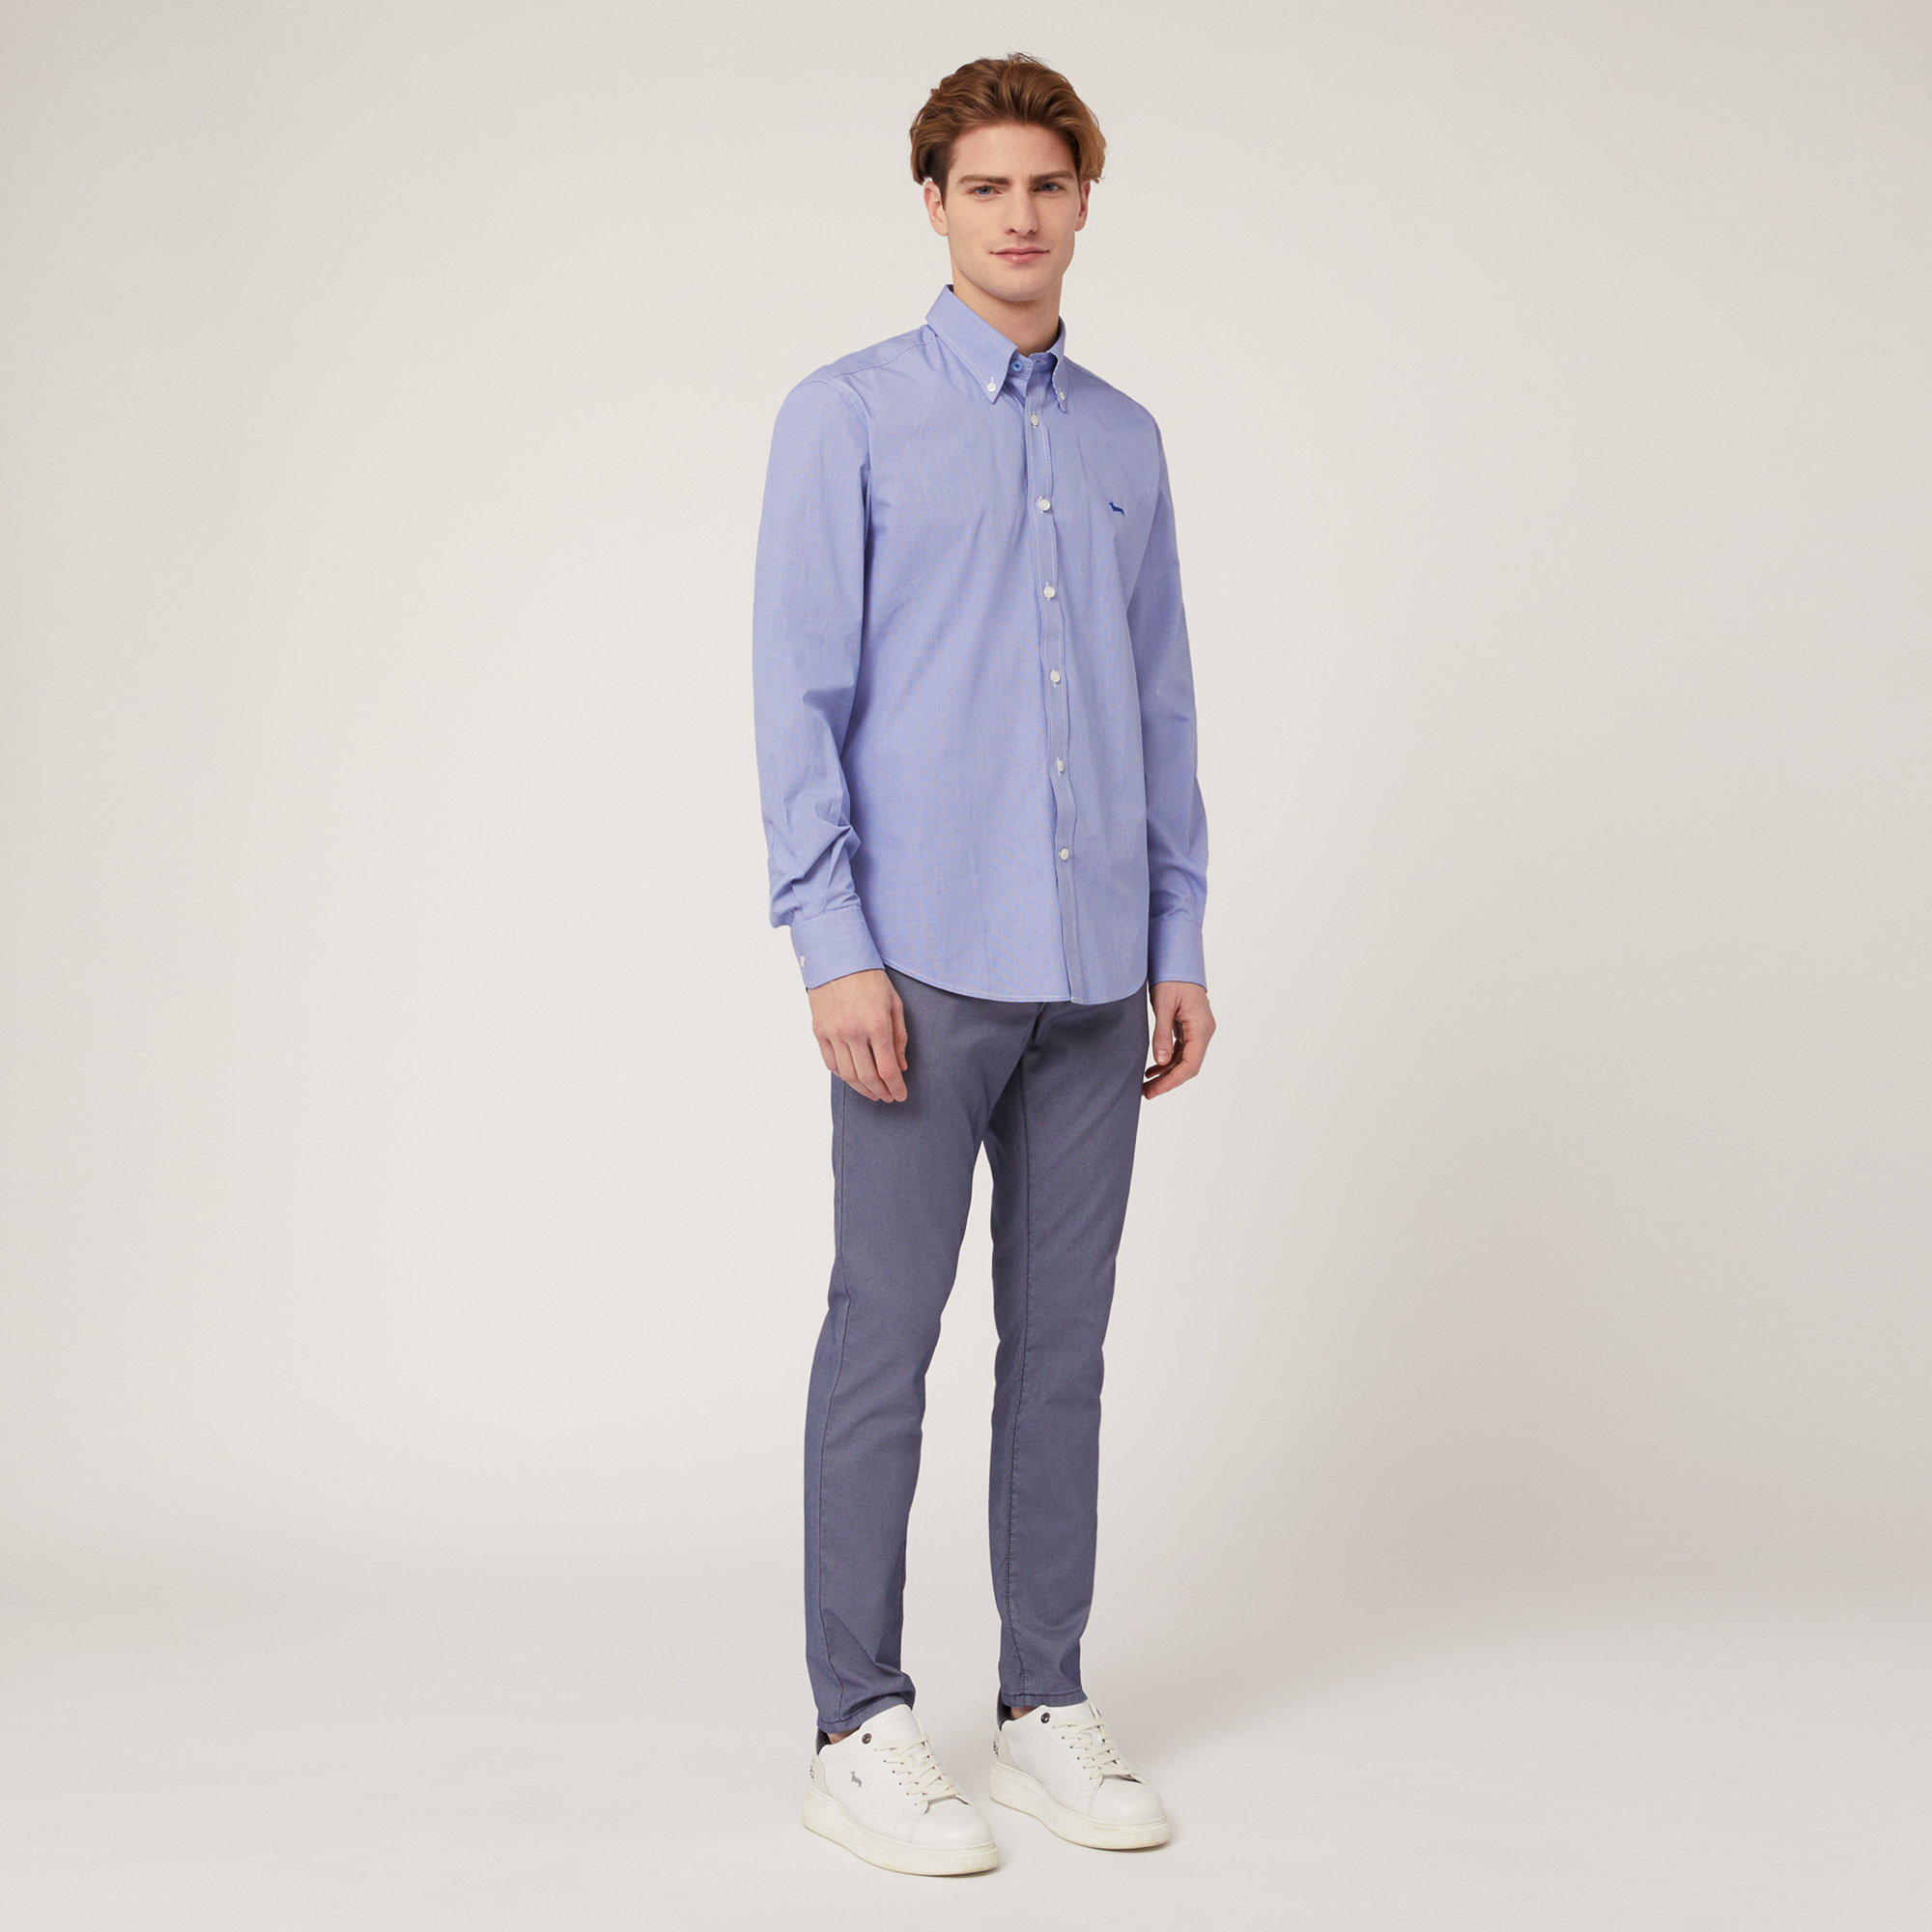 Regular Fit Cotton Shirt, Blue, large image number 3